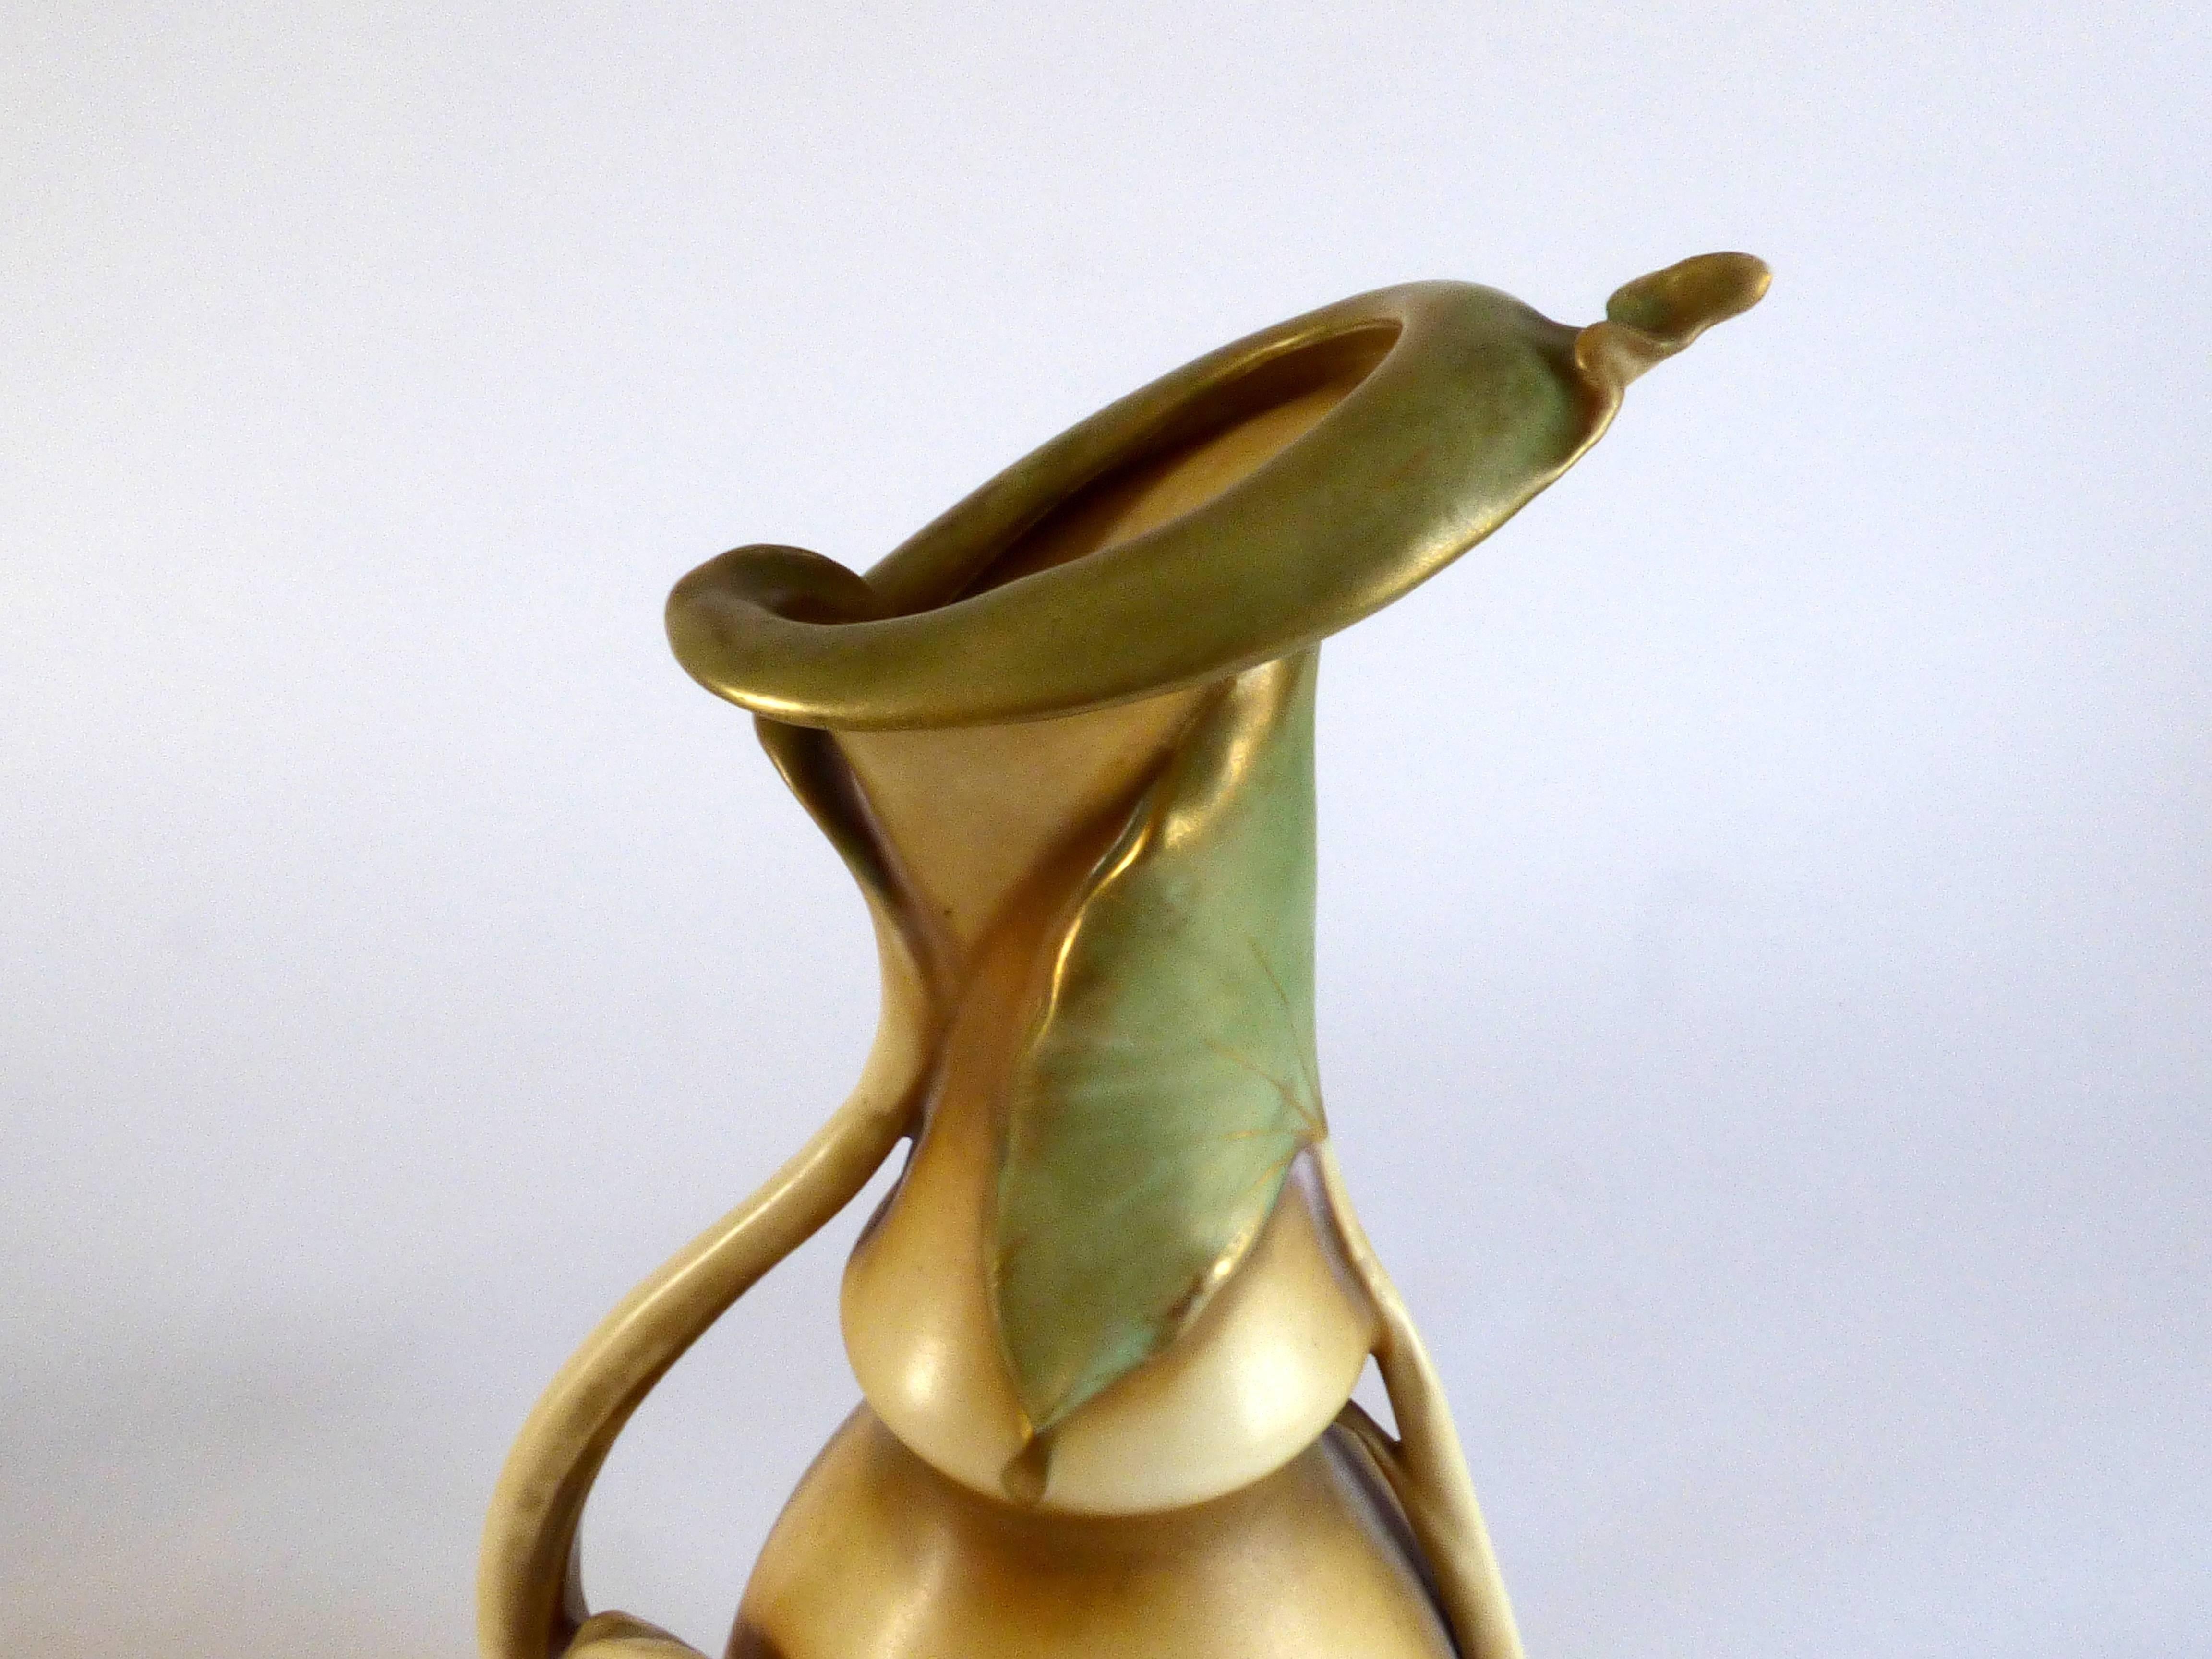 Vase Art nouveau en céramique produit par Turn-Teplitz, Bohème, fabriqué en Autriche. Fabrication d'amphores entre 1892 et 1905. Signé.